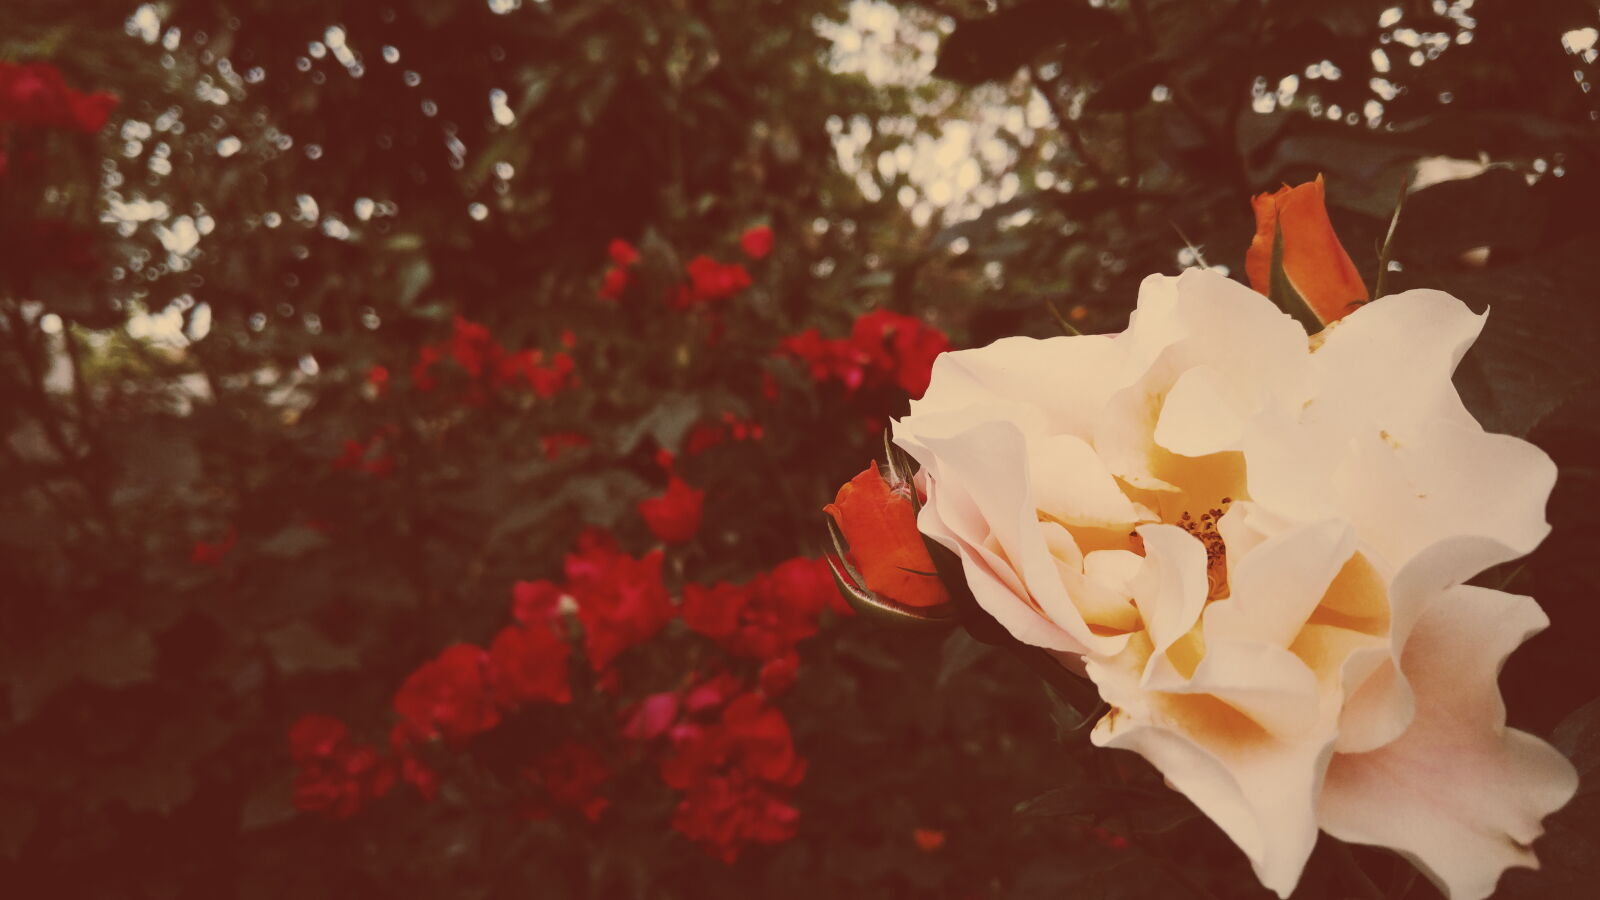 LG V10 sample photo. Flower, garden, rose, yellow photography